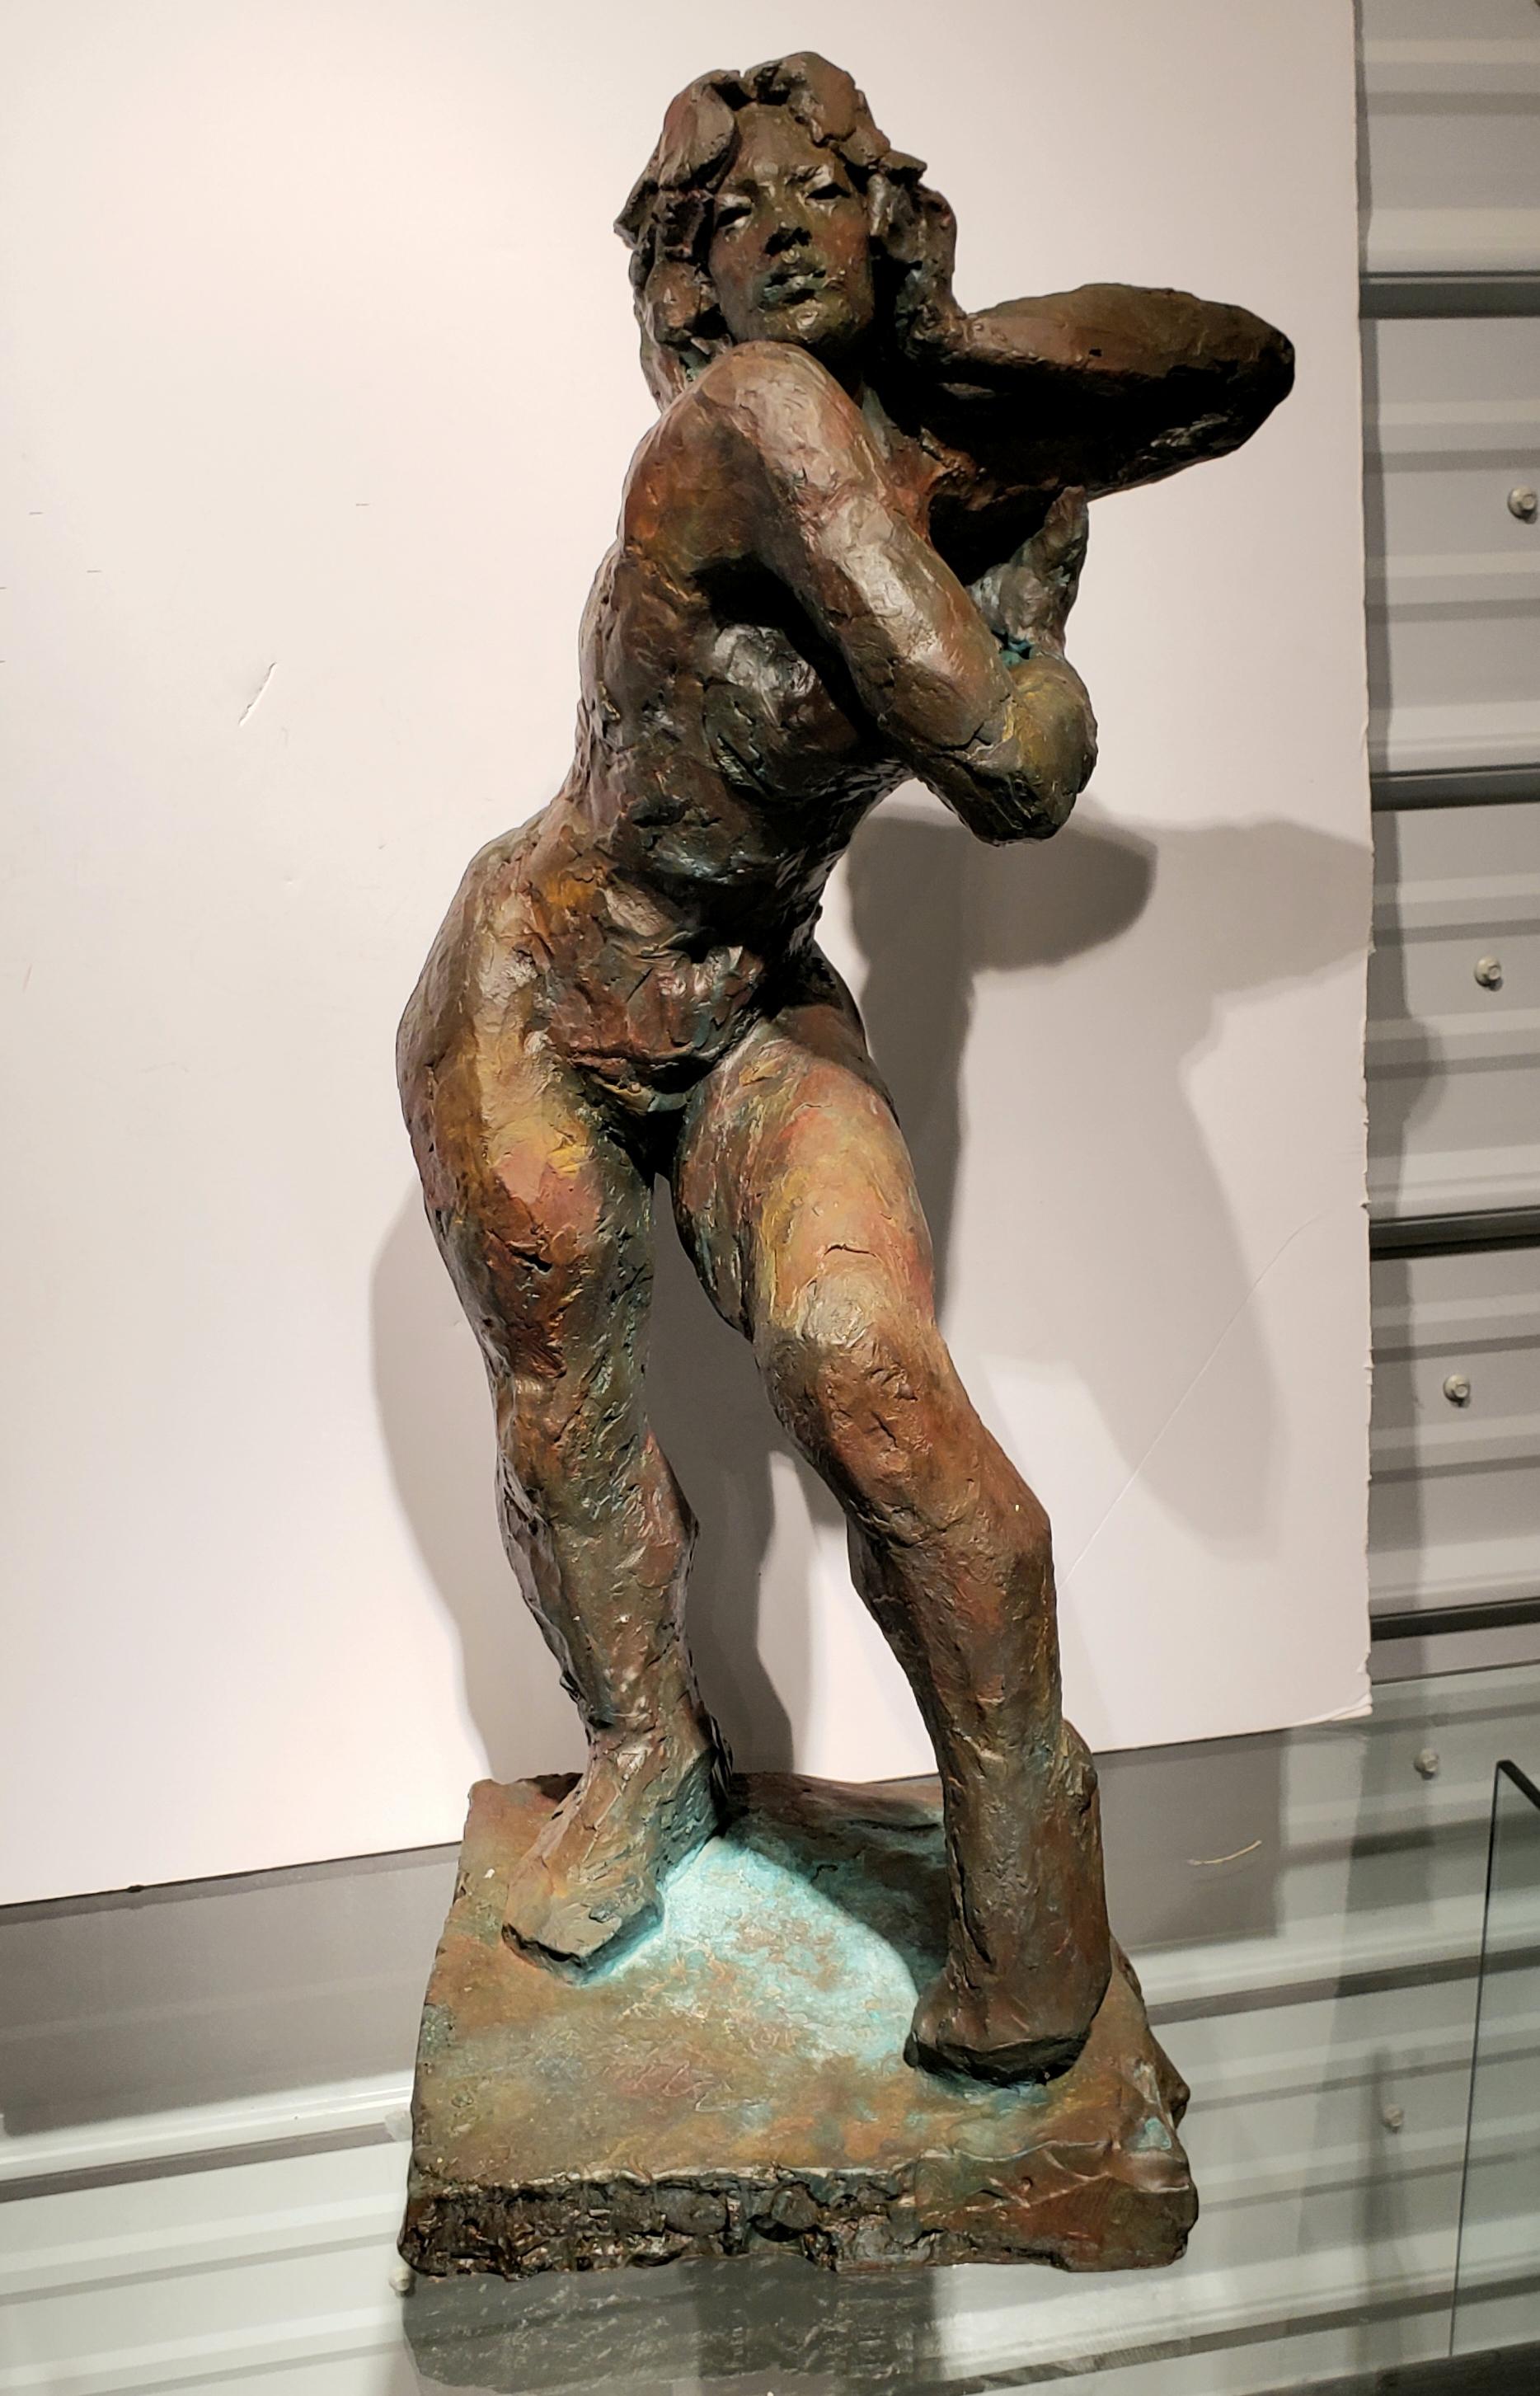 James Patrick Maher (20. Jahrhundert), Bronze Skulptur einer nackten Frau.
James P. Maher war ein renommierter Künstler, dessen Zeichnungen, Gemälde und Skulpturen eine angeborene Wertschätzung für die menschliche Gestalt in all ihrer Schönheit und